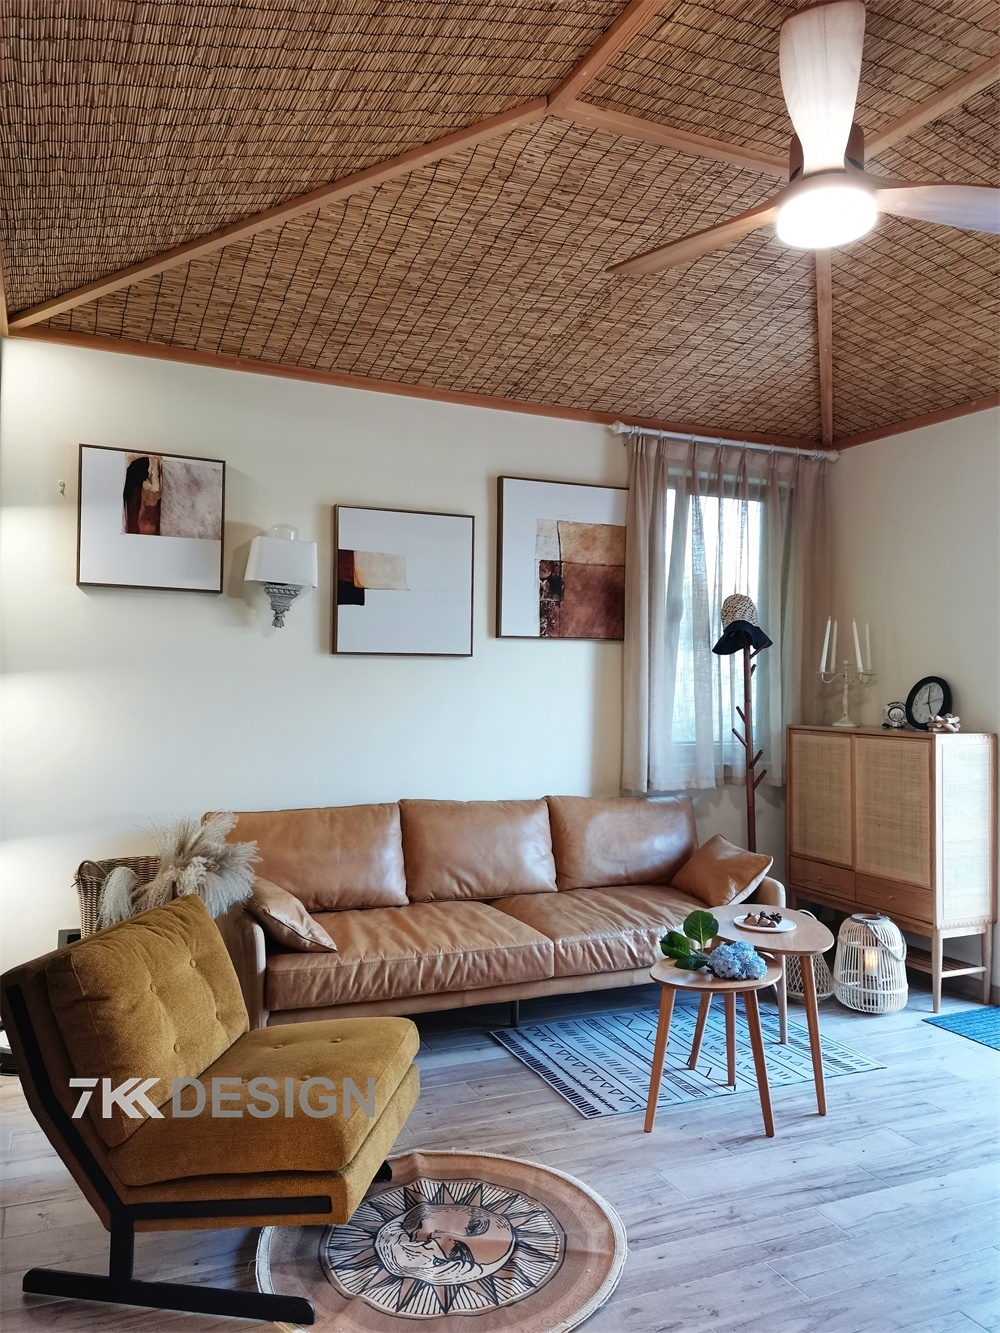 原木色地板与暖白墙面粉刷,客厅顶面的吊顶采用的是芦苇杆草席材质